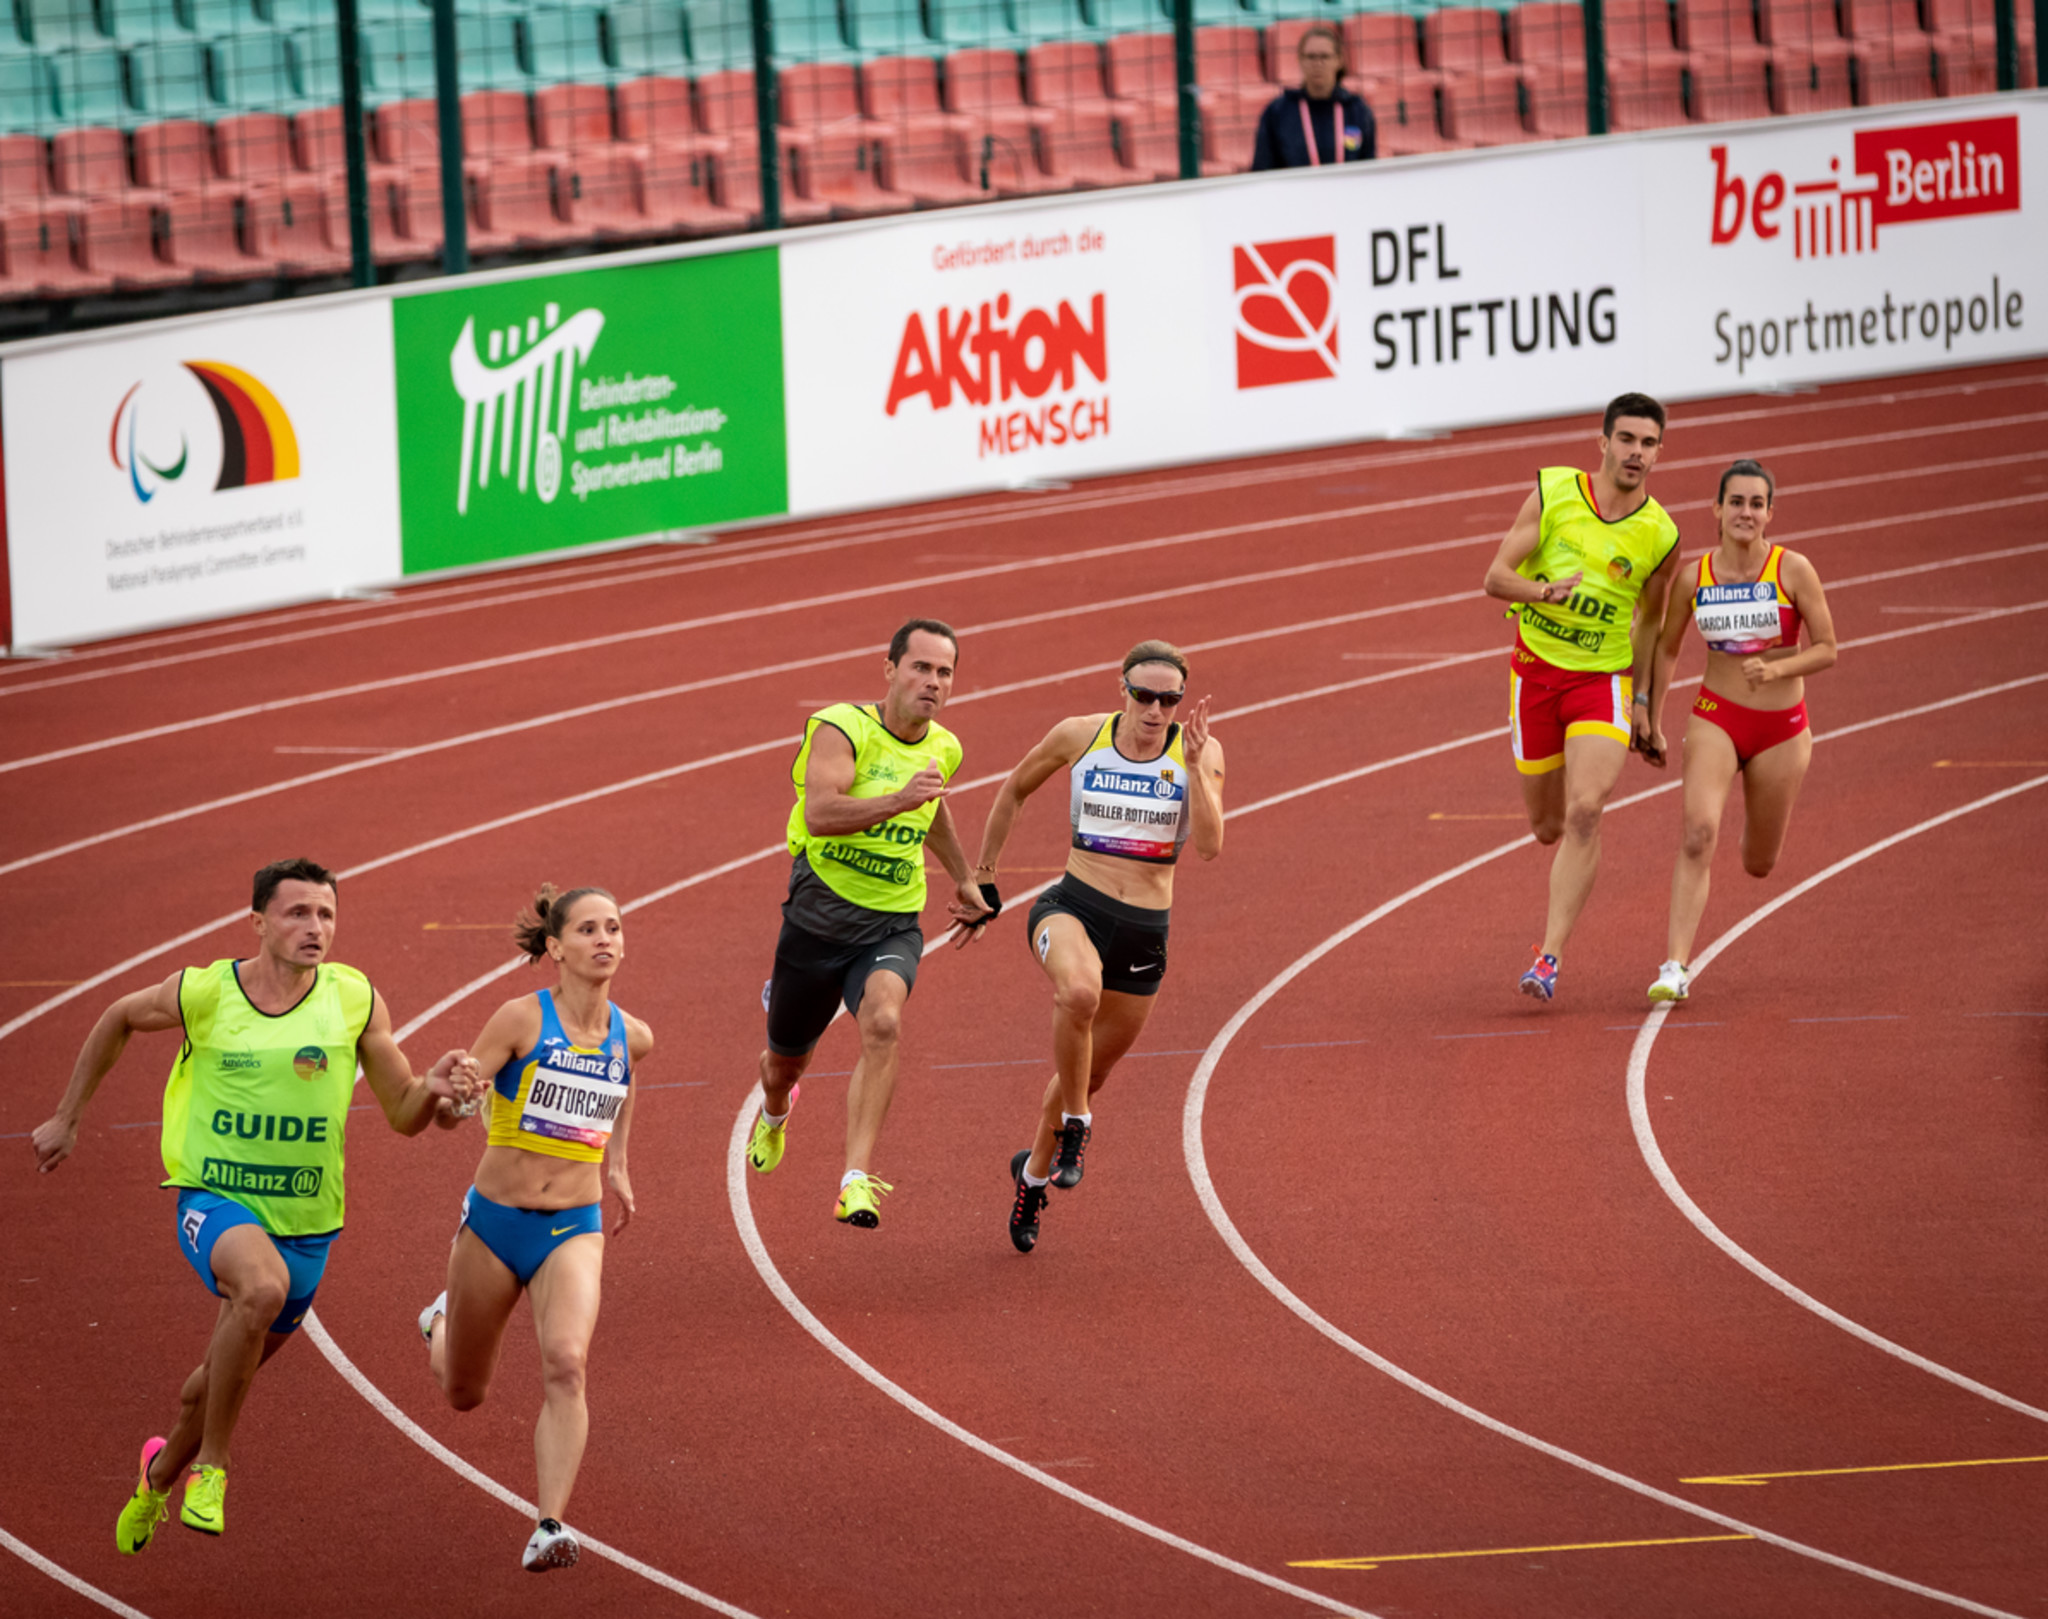 Auf einer Laufbahn biegen drei blindeLäuferinnen mit ihren Assistenz-Läufern auf die Zielgerade ein.